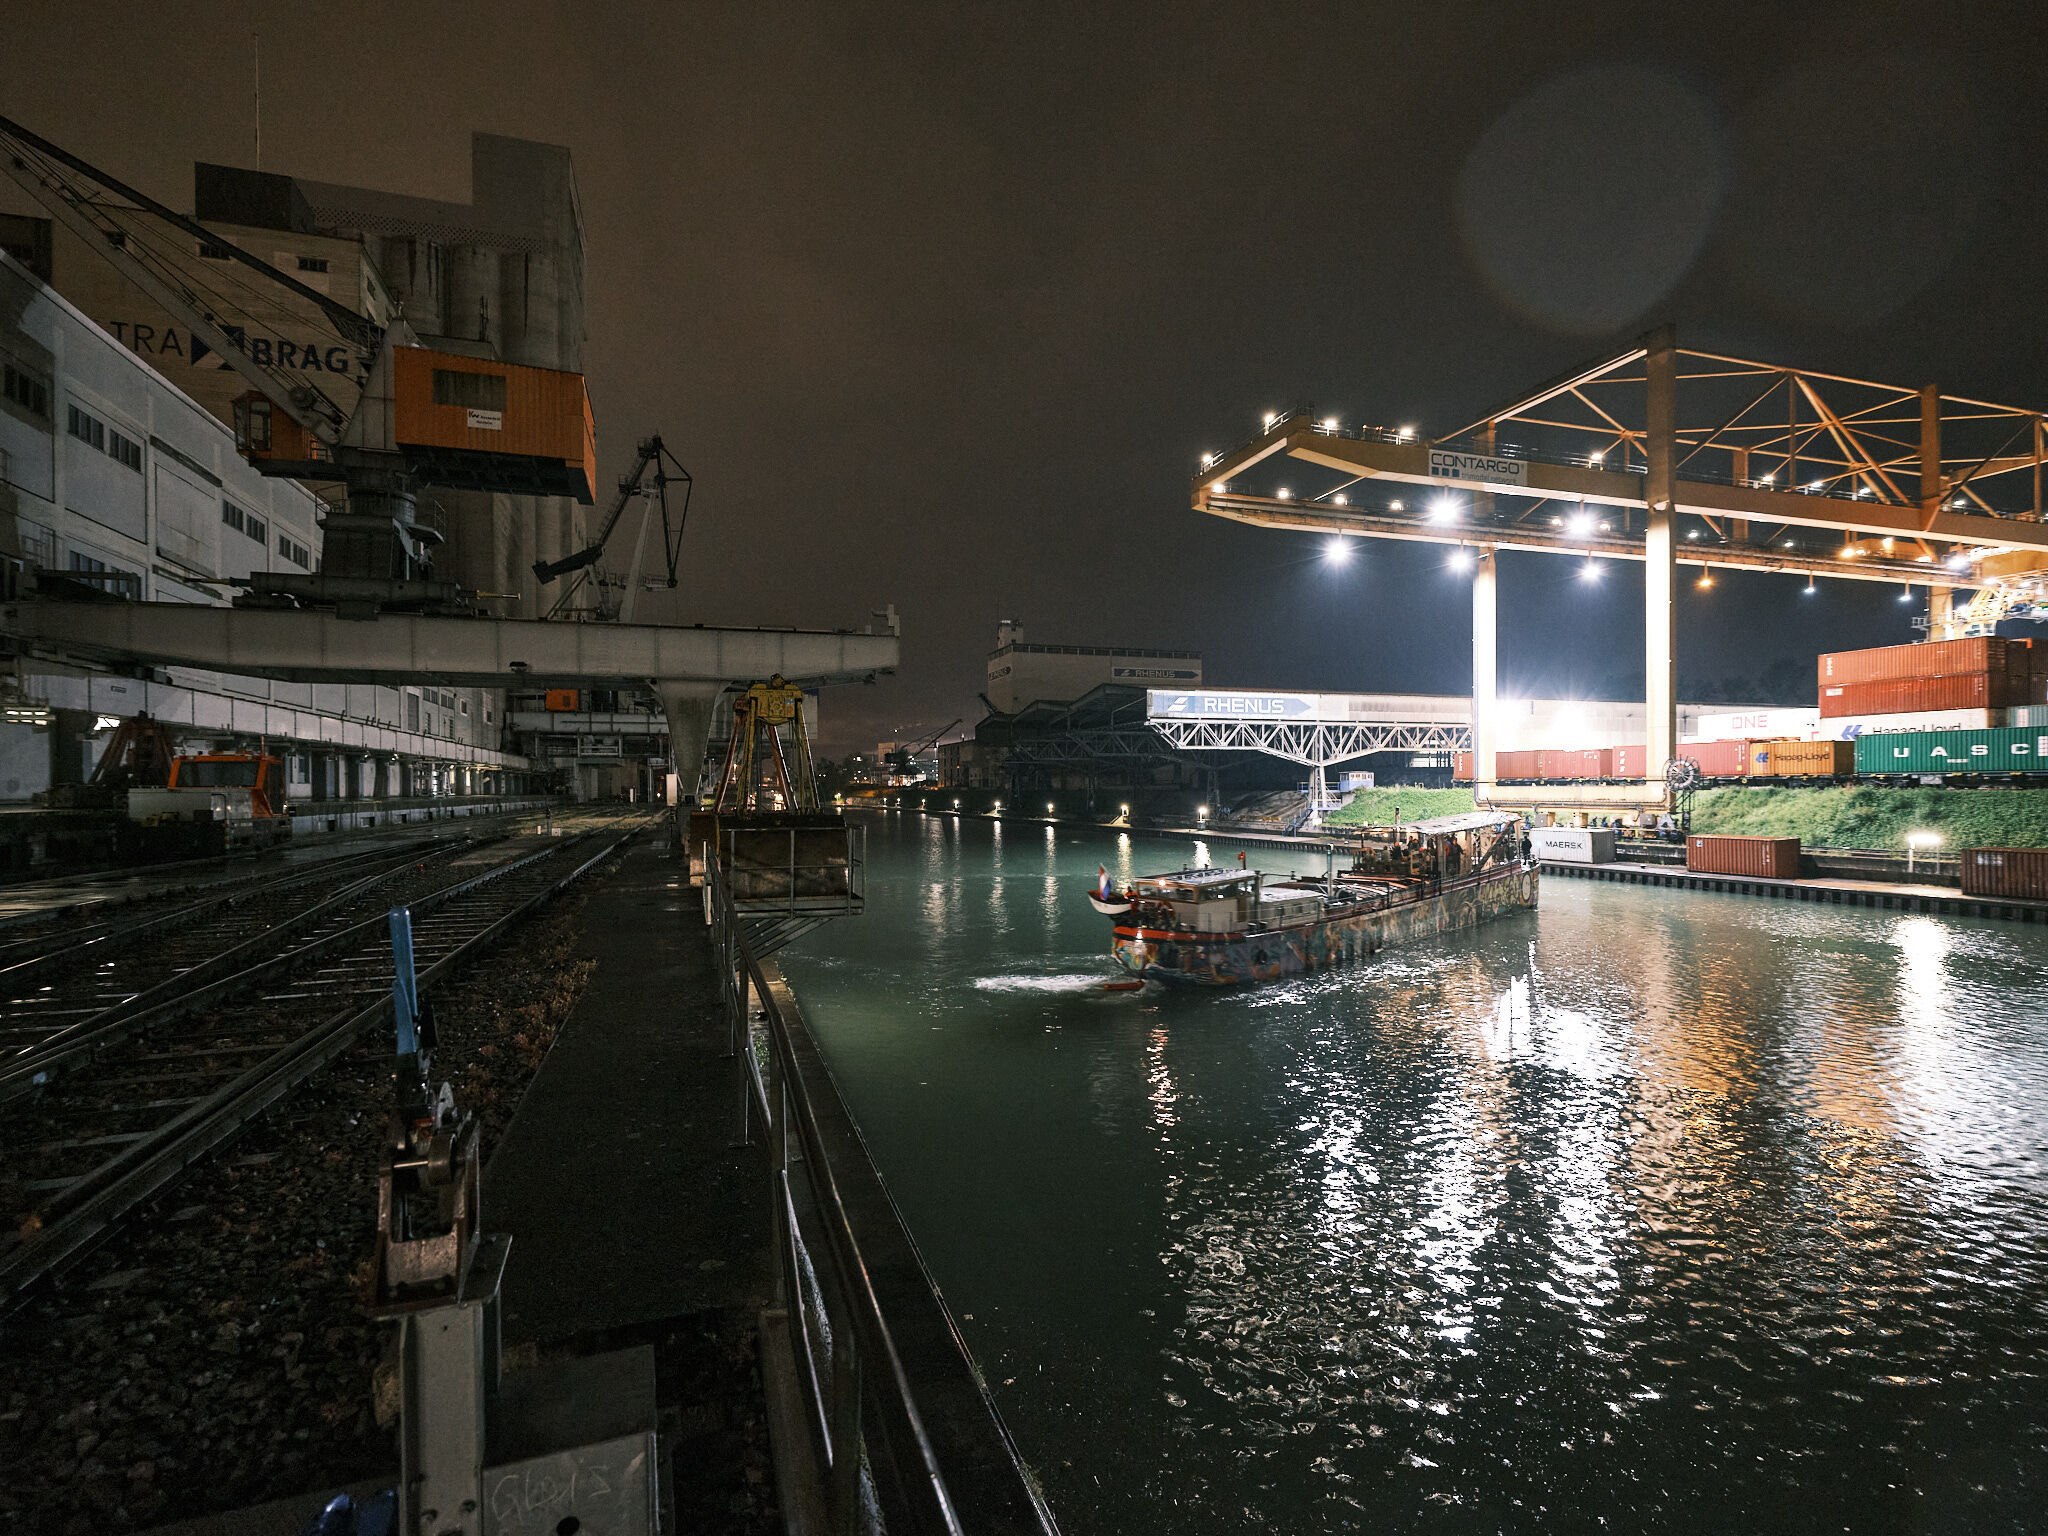 Brachte Licht ins Dunkel - am Hafen erfuhren die Besuchenden mehr über das Tun vor Ort.